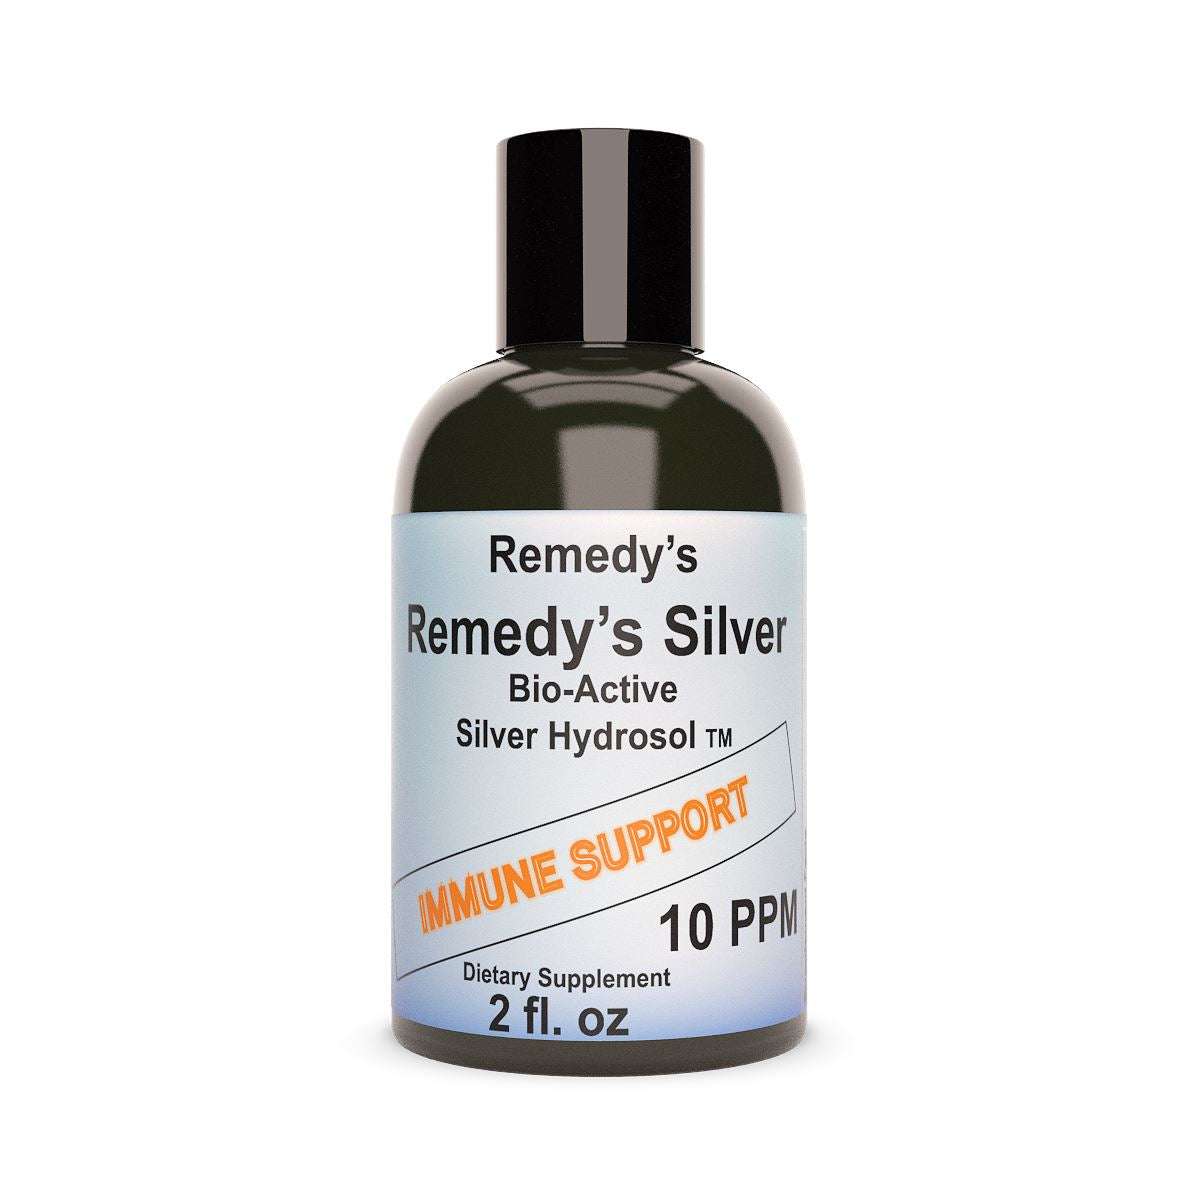 Remedy's Silver Hydrosol